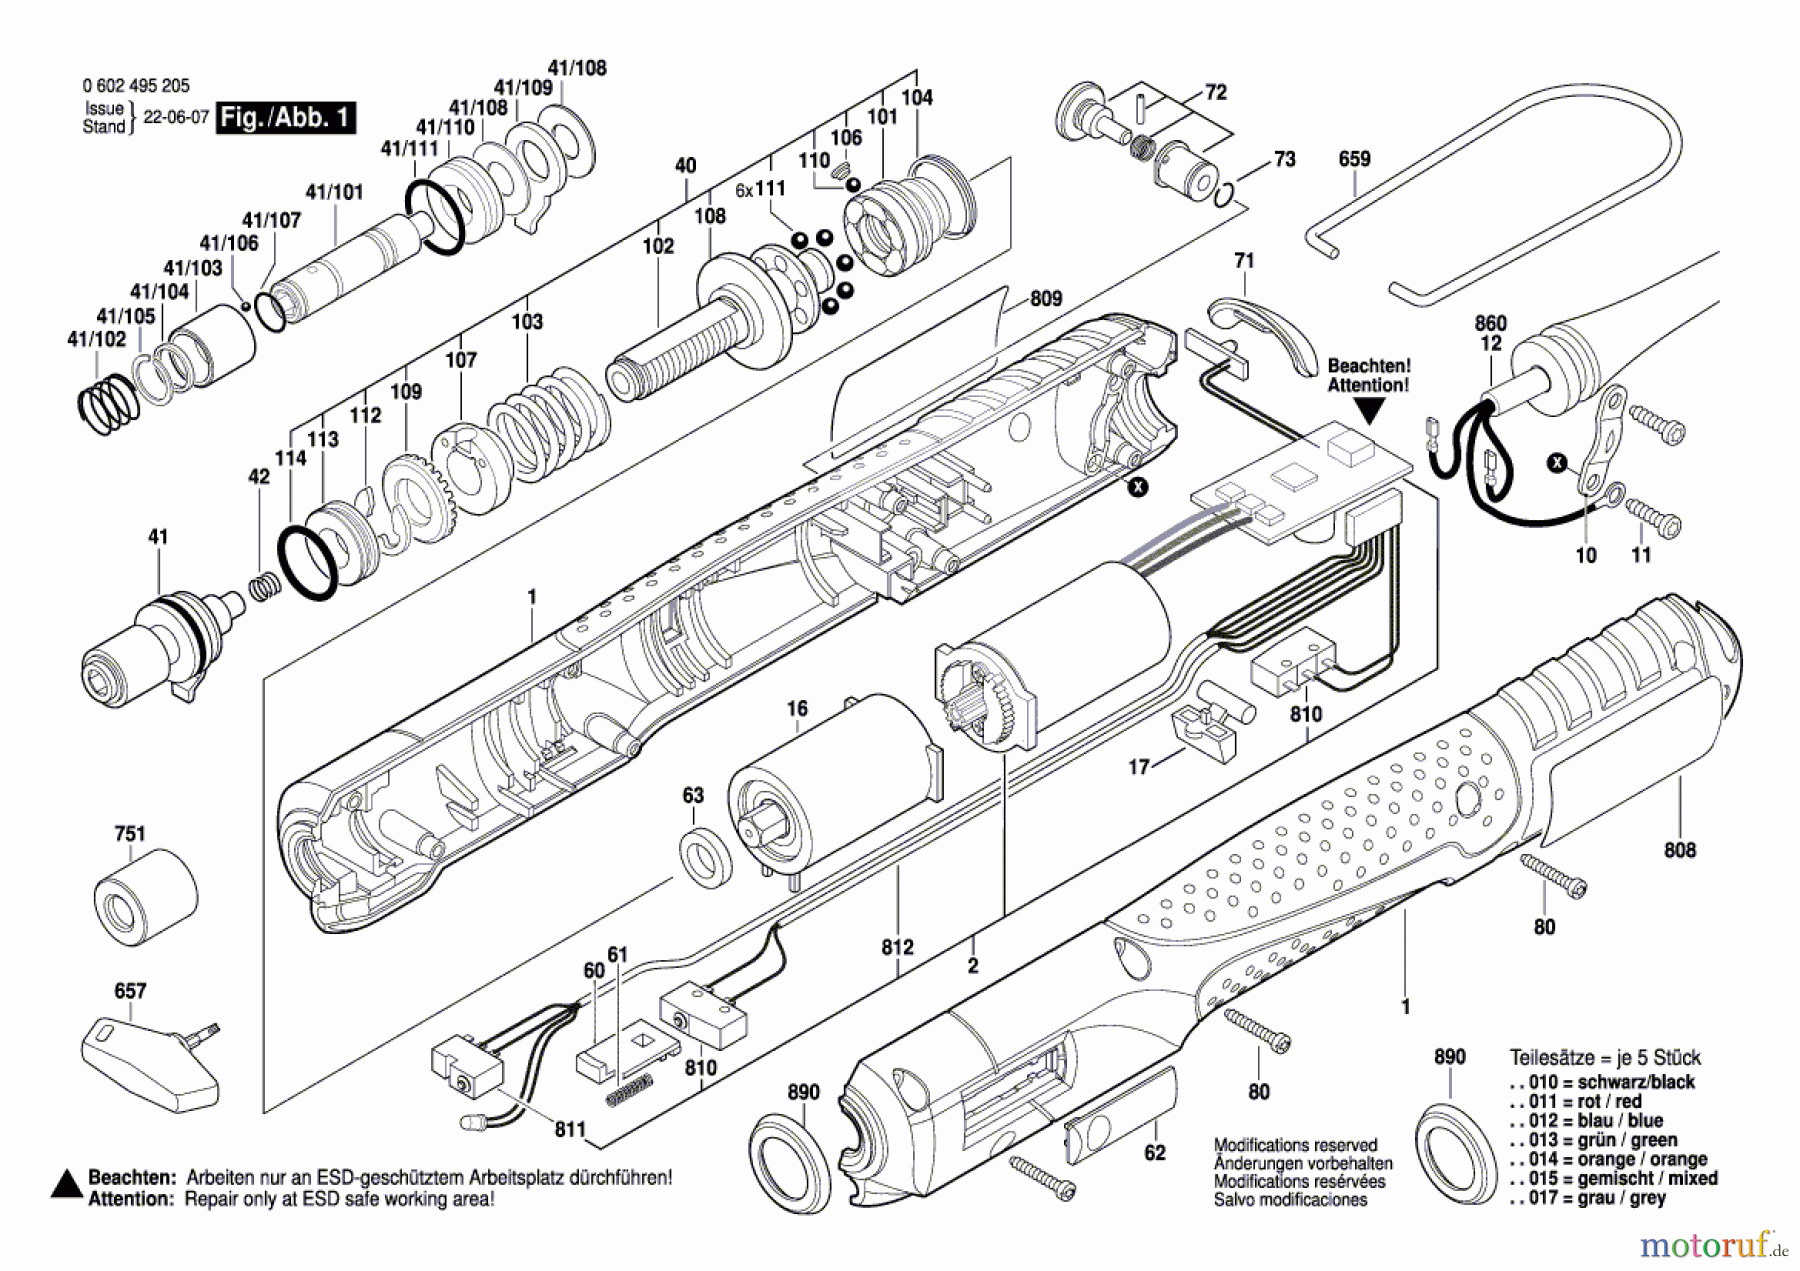  Bosch Werkzeug Schrauber C-EXACT 1 Seite 1